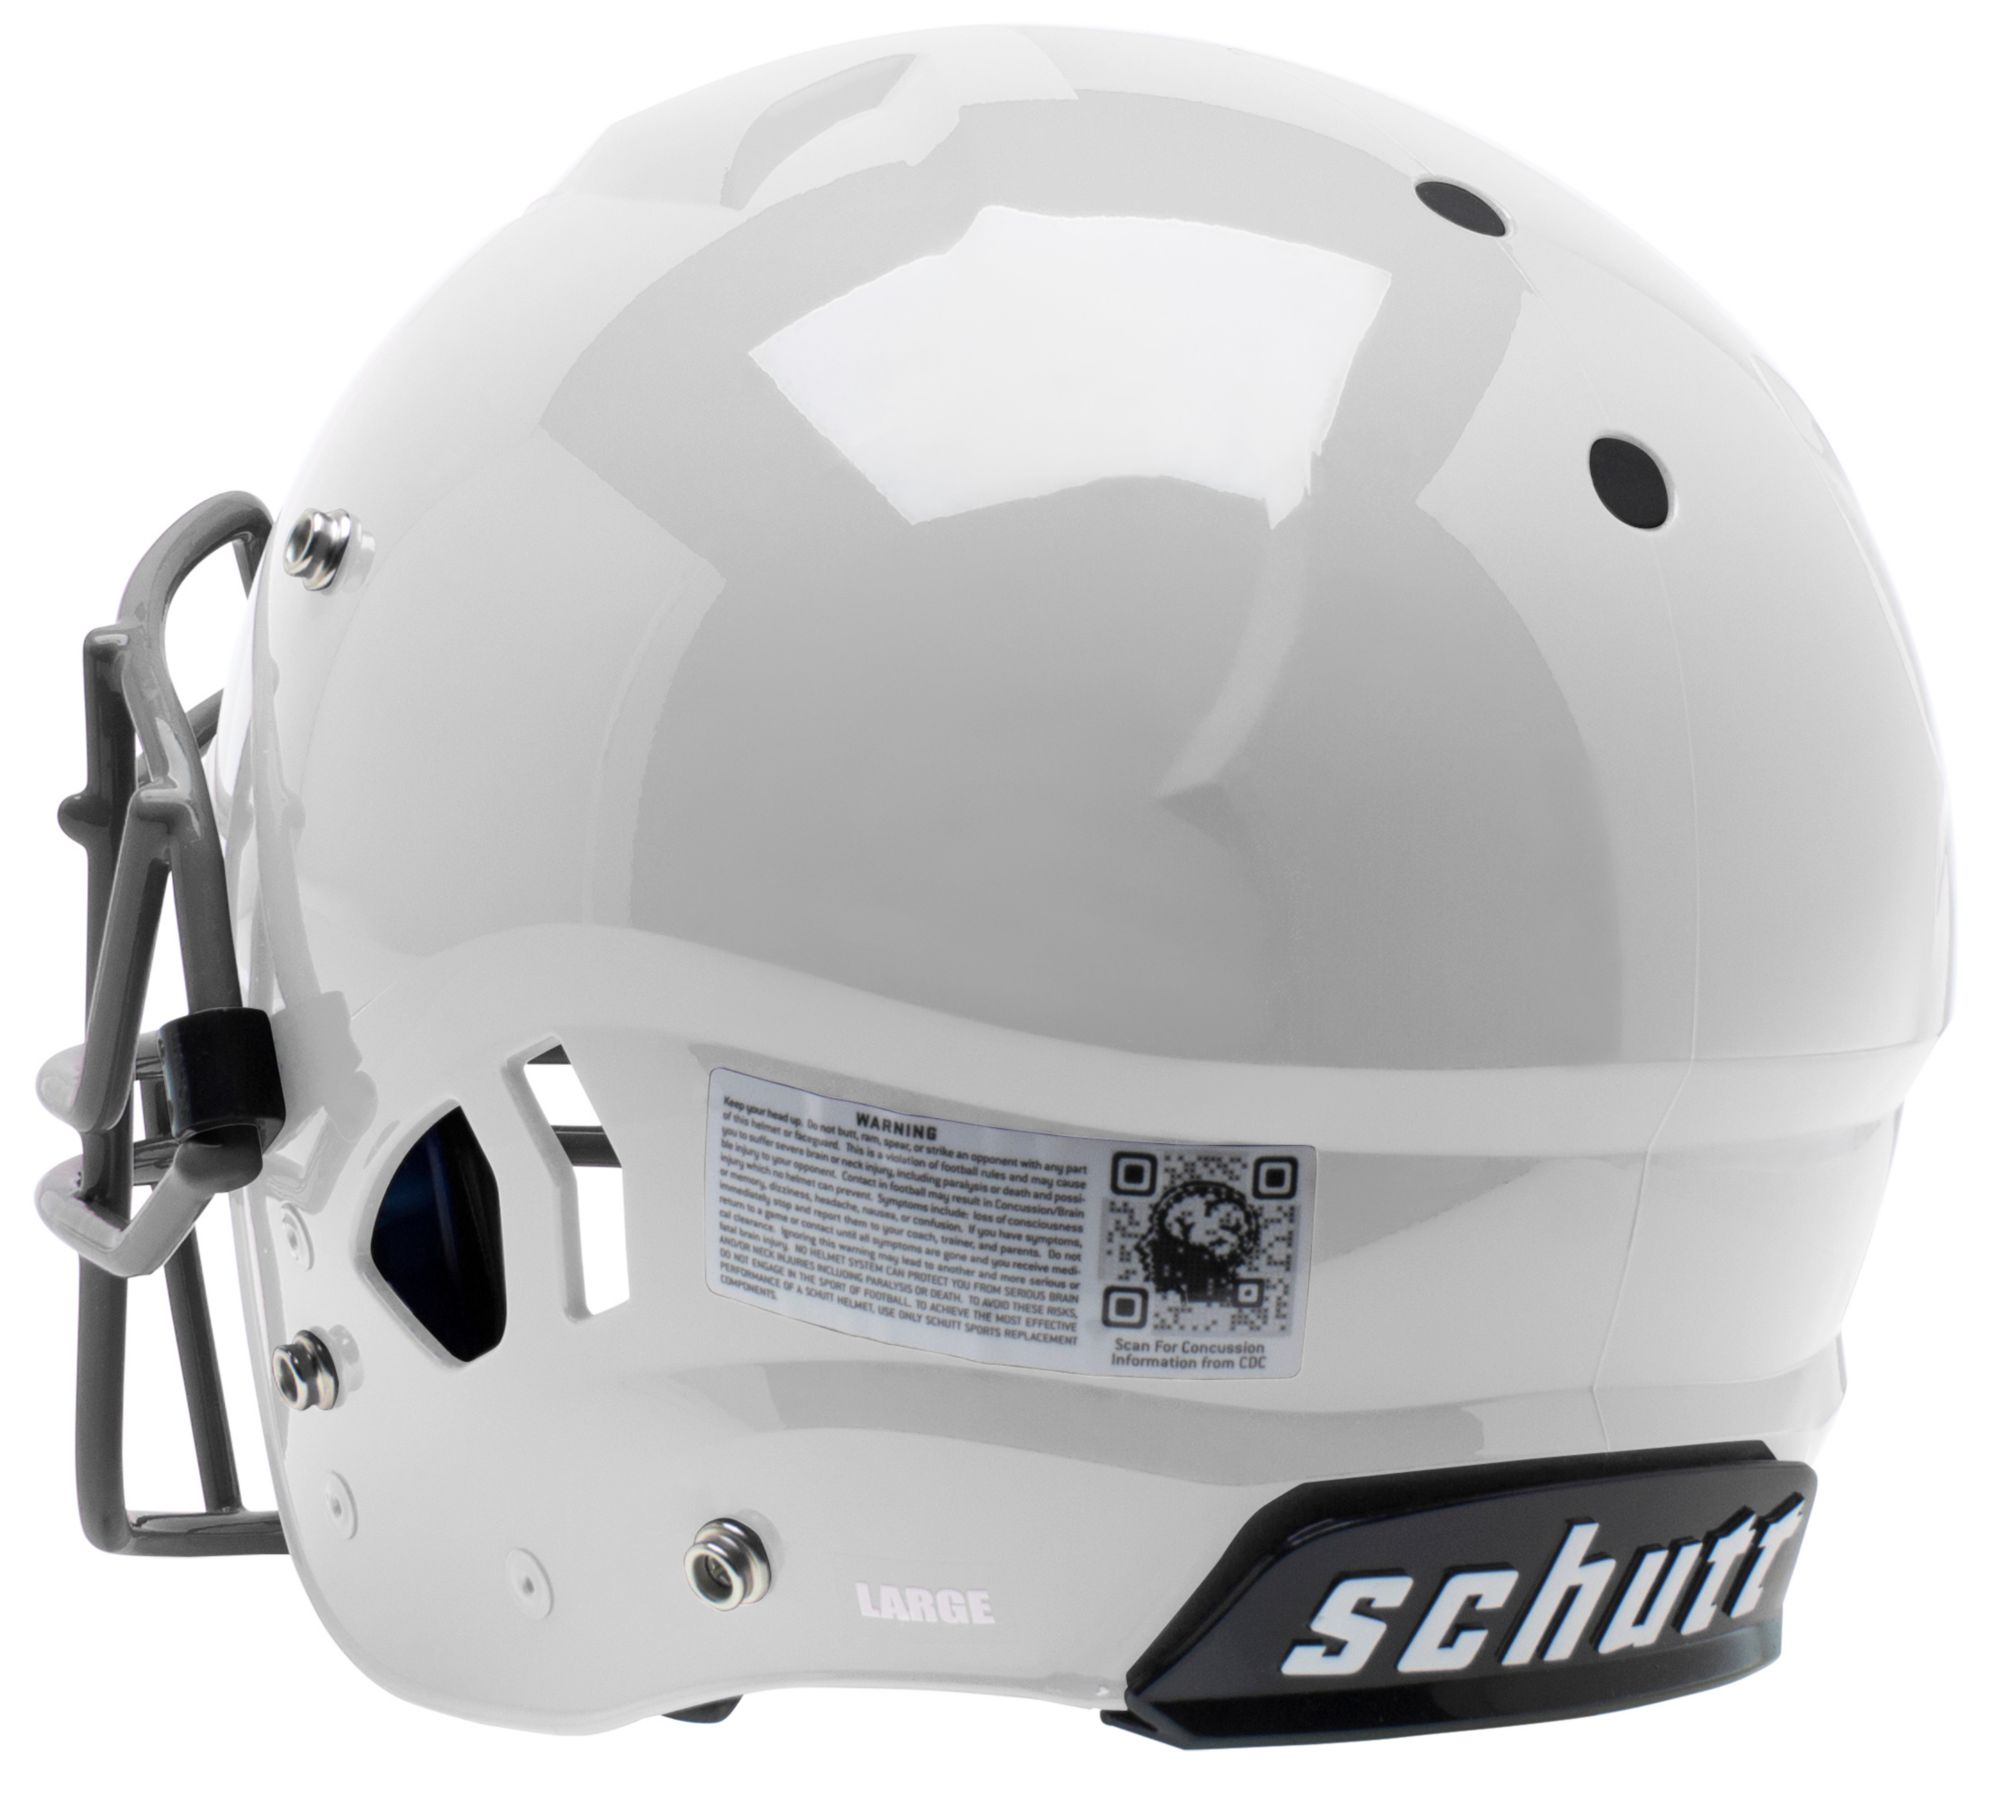 Schutt A11 Youth Football Helmet